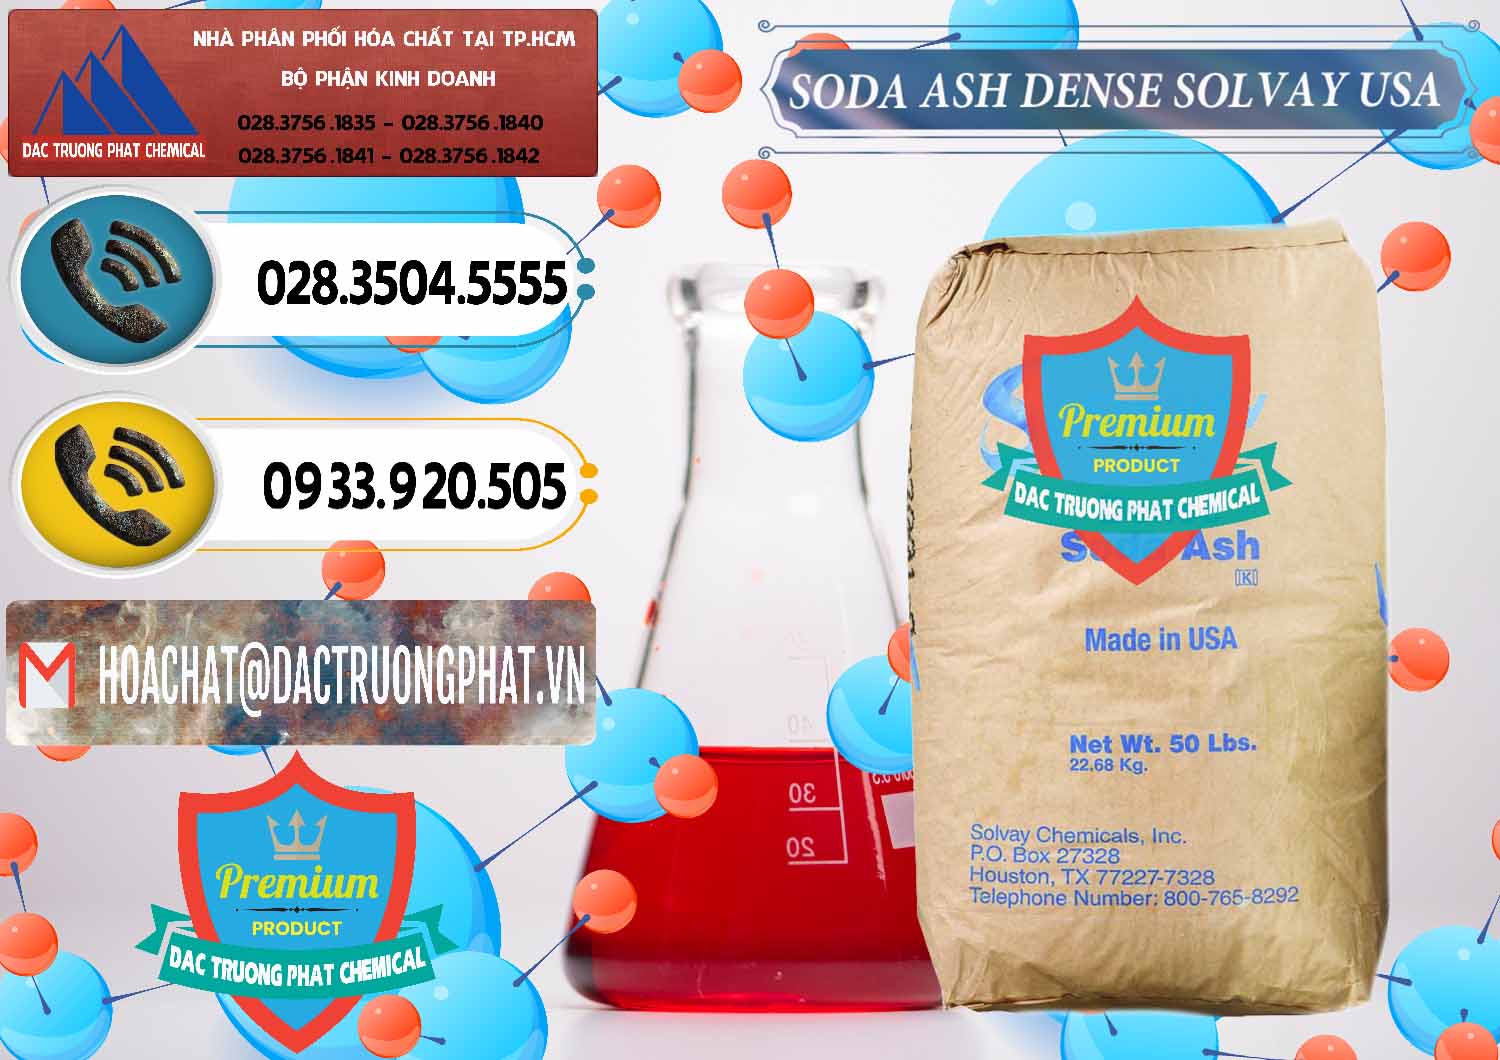 Nơi phân phối và bán Soda Ash Dense - NA2CO3 Solvay Mỹ USA - 0337 - Cung cấp hóa chất tại TP.HCM - hoachatdetnhuom.vn